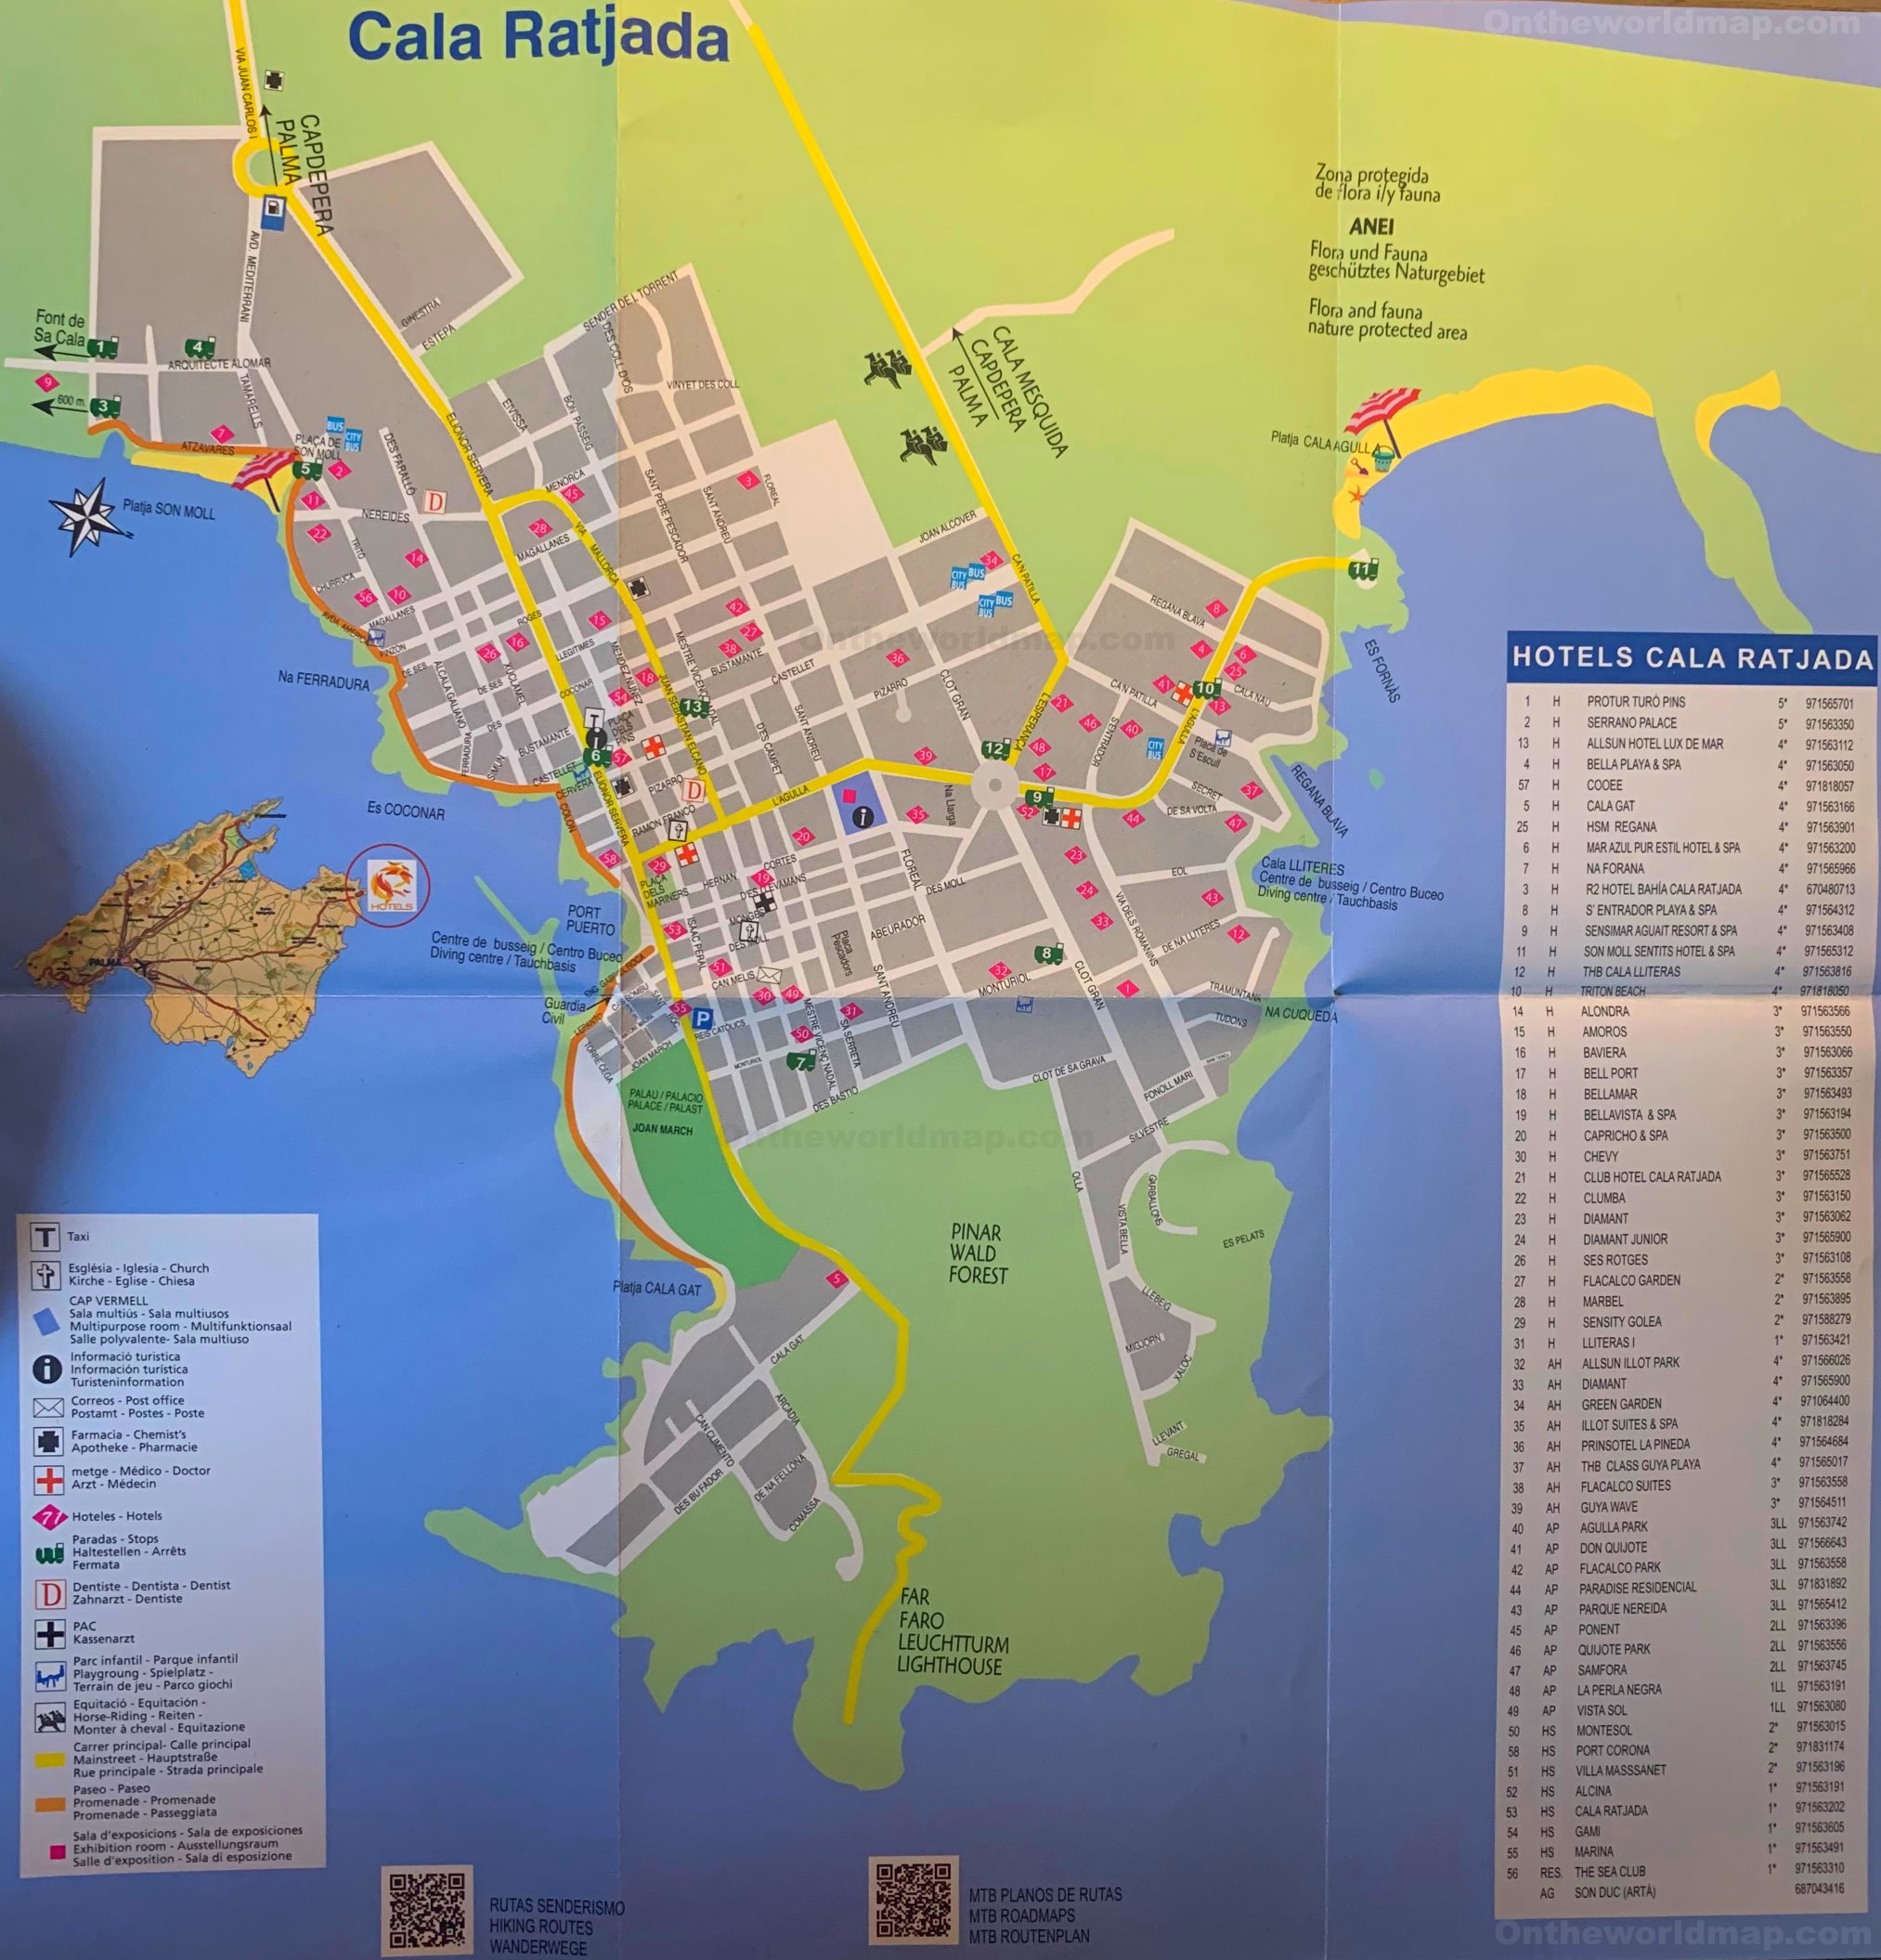 Cala Ratjada Tourist Map